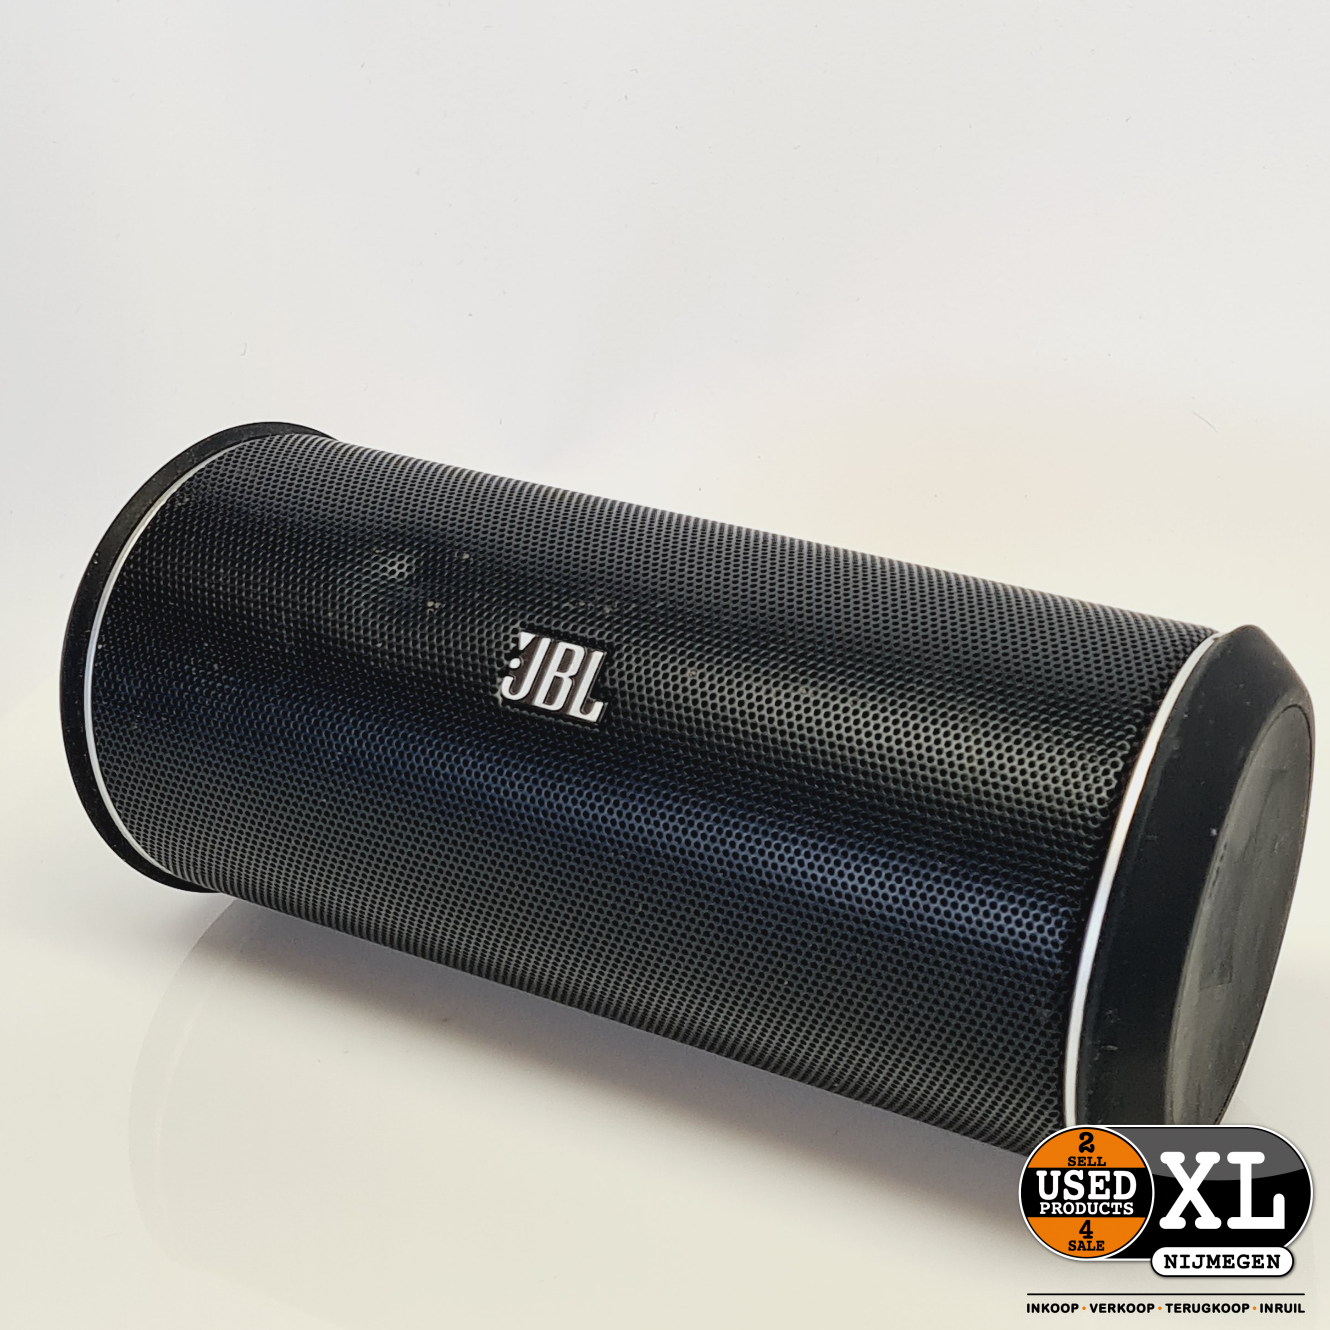 JBL 2 Bluetooth Speaker Zwart | met Garantie - Used Products XL